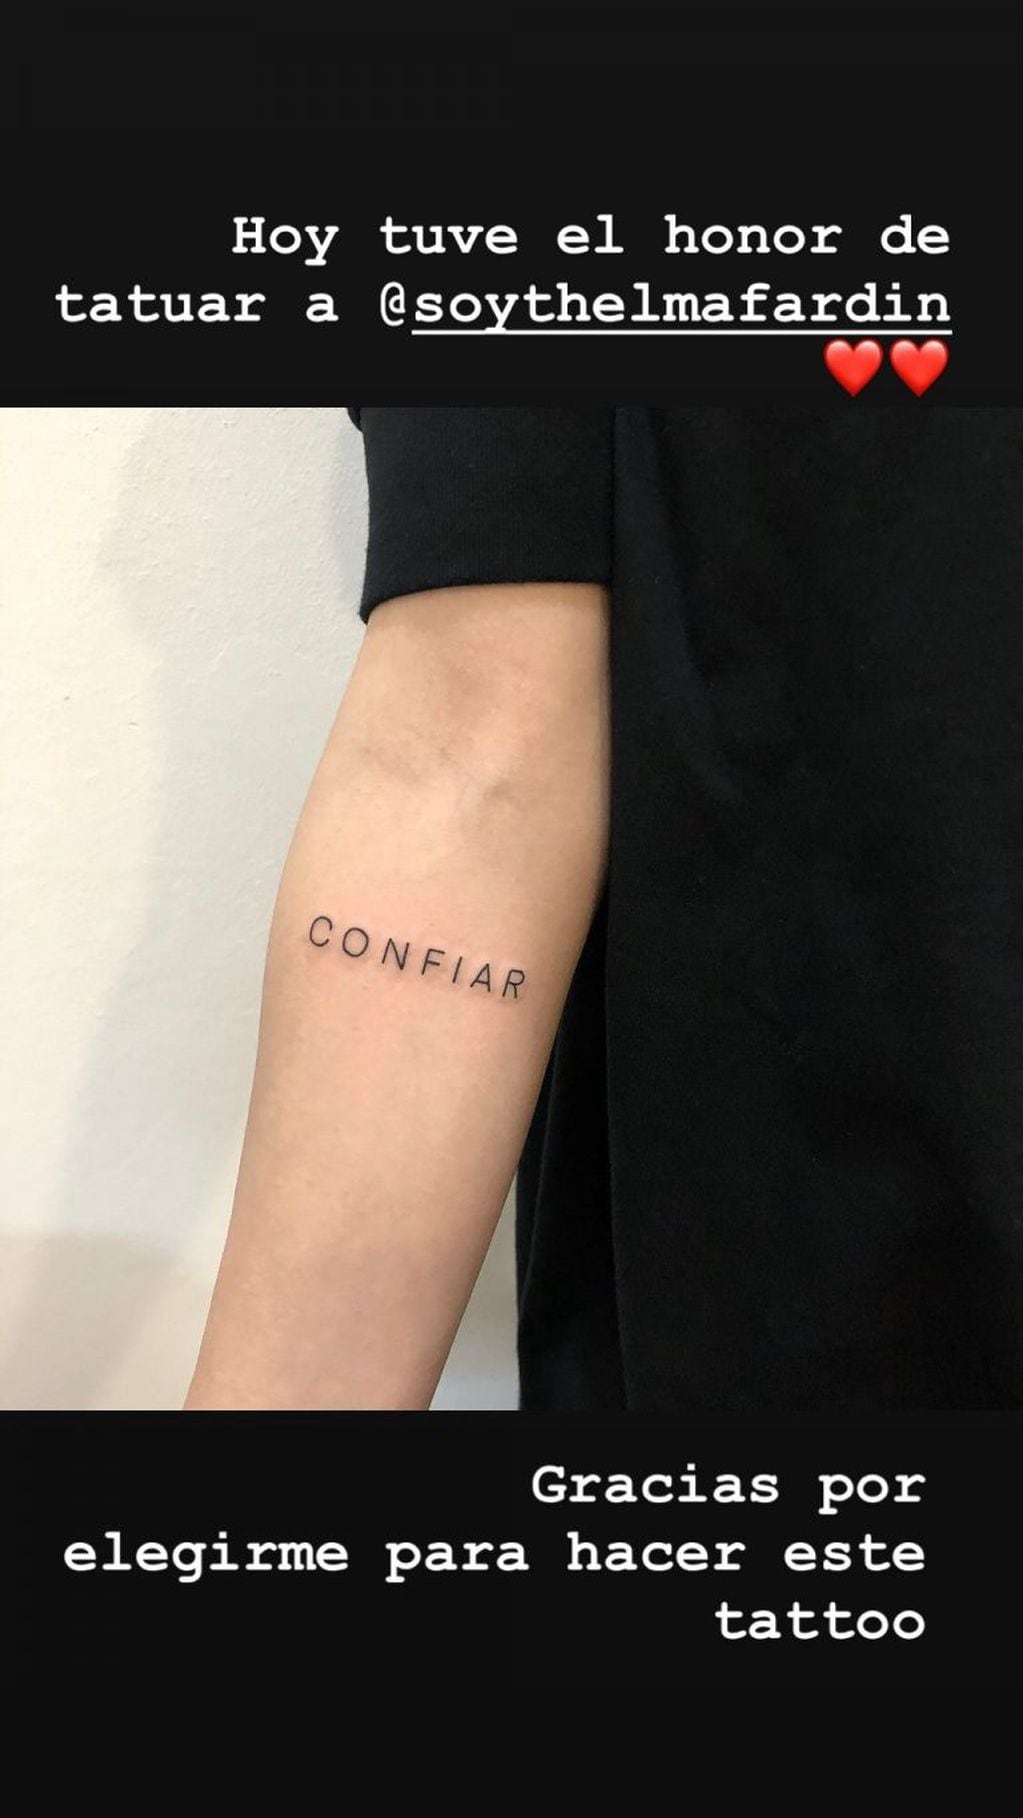 Thelma Fardin se tatuó la palabra "Confiar" en su brazo derecho (Foto: Instagram/ soythelmafardin)